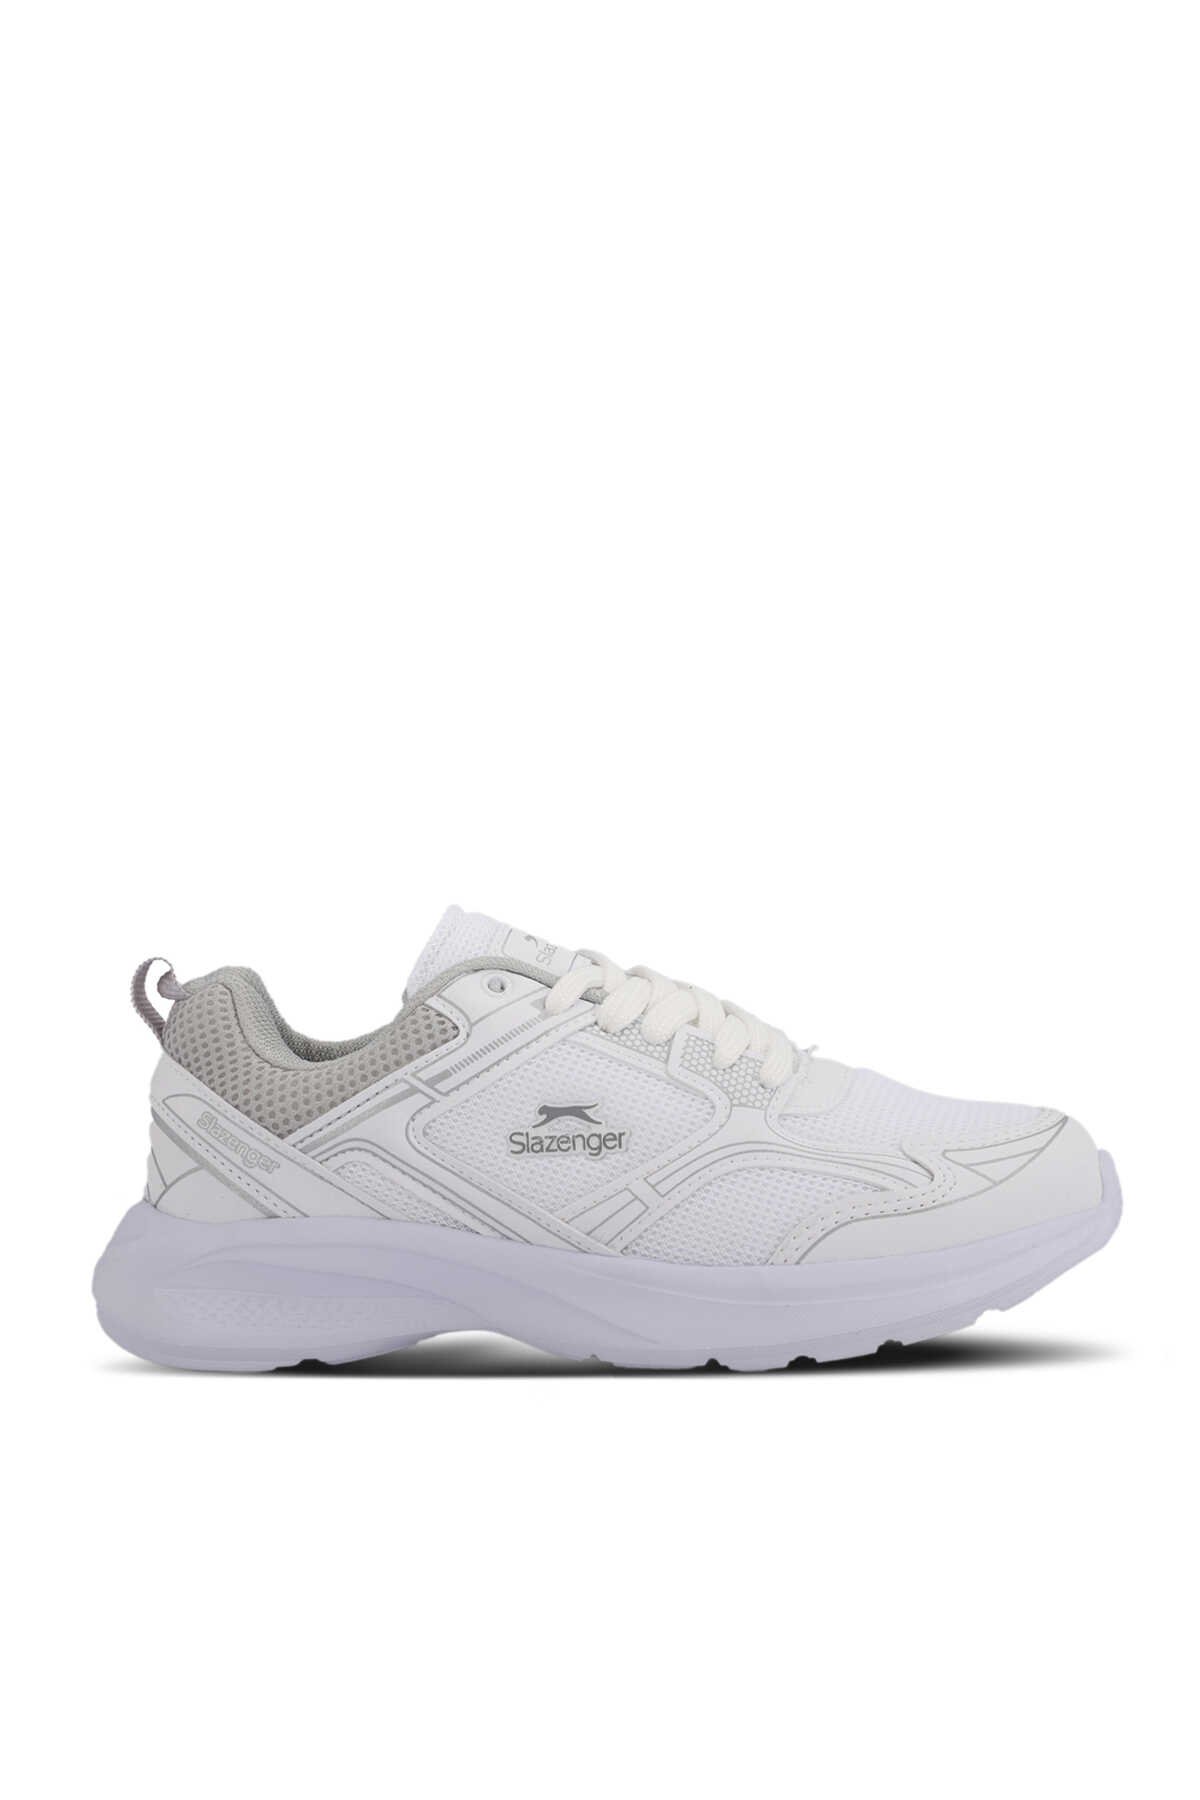 Slazenger - Slazenger GIMA Kadın Sneaker Ayakkabı Beyaz / Gümüş